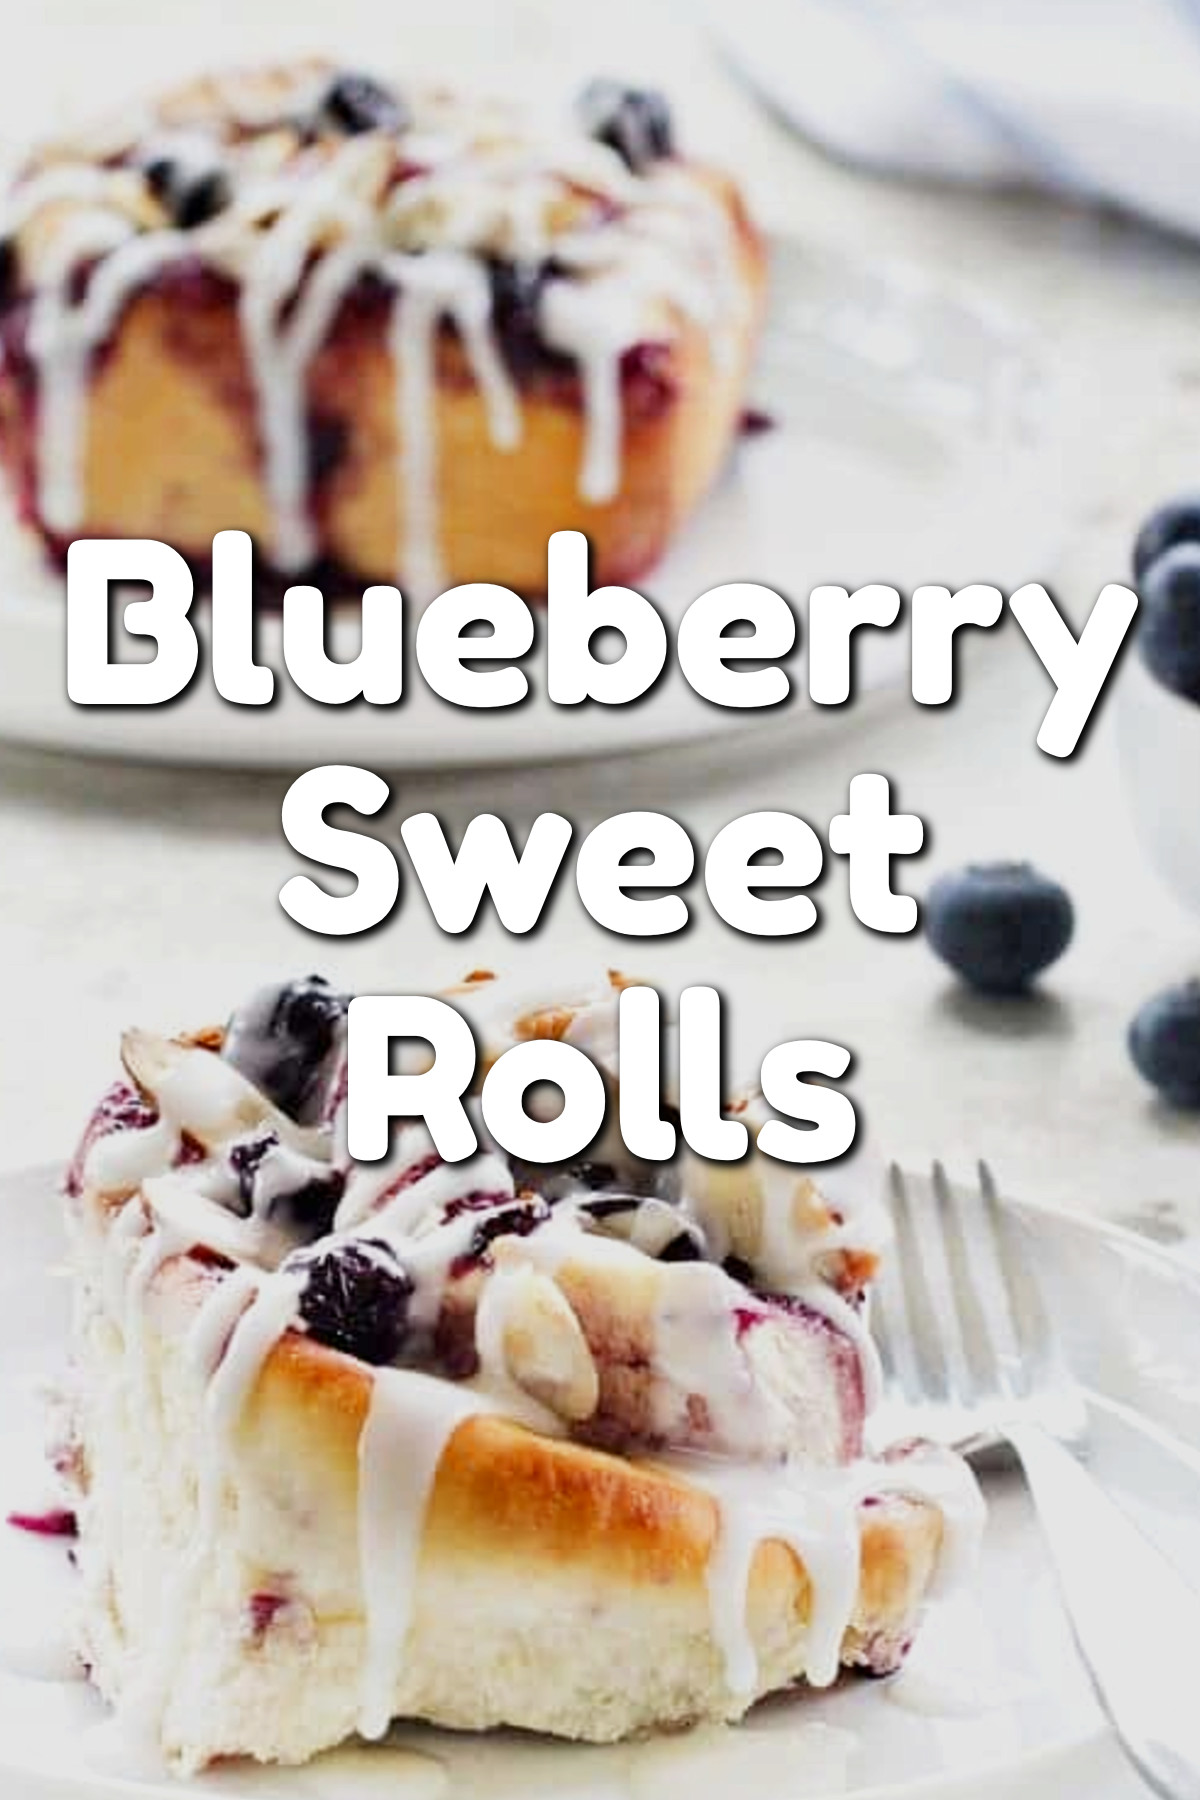 brunch food ideas - Blueberry Sweet Rolls